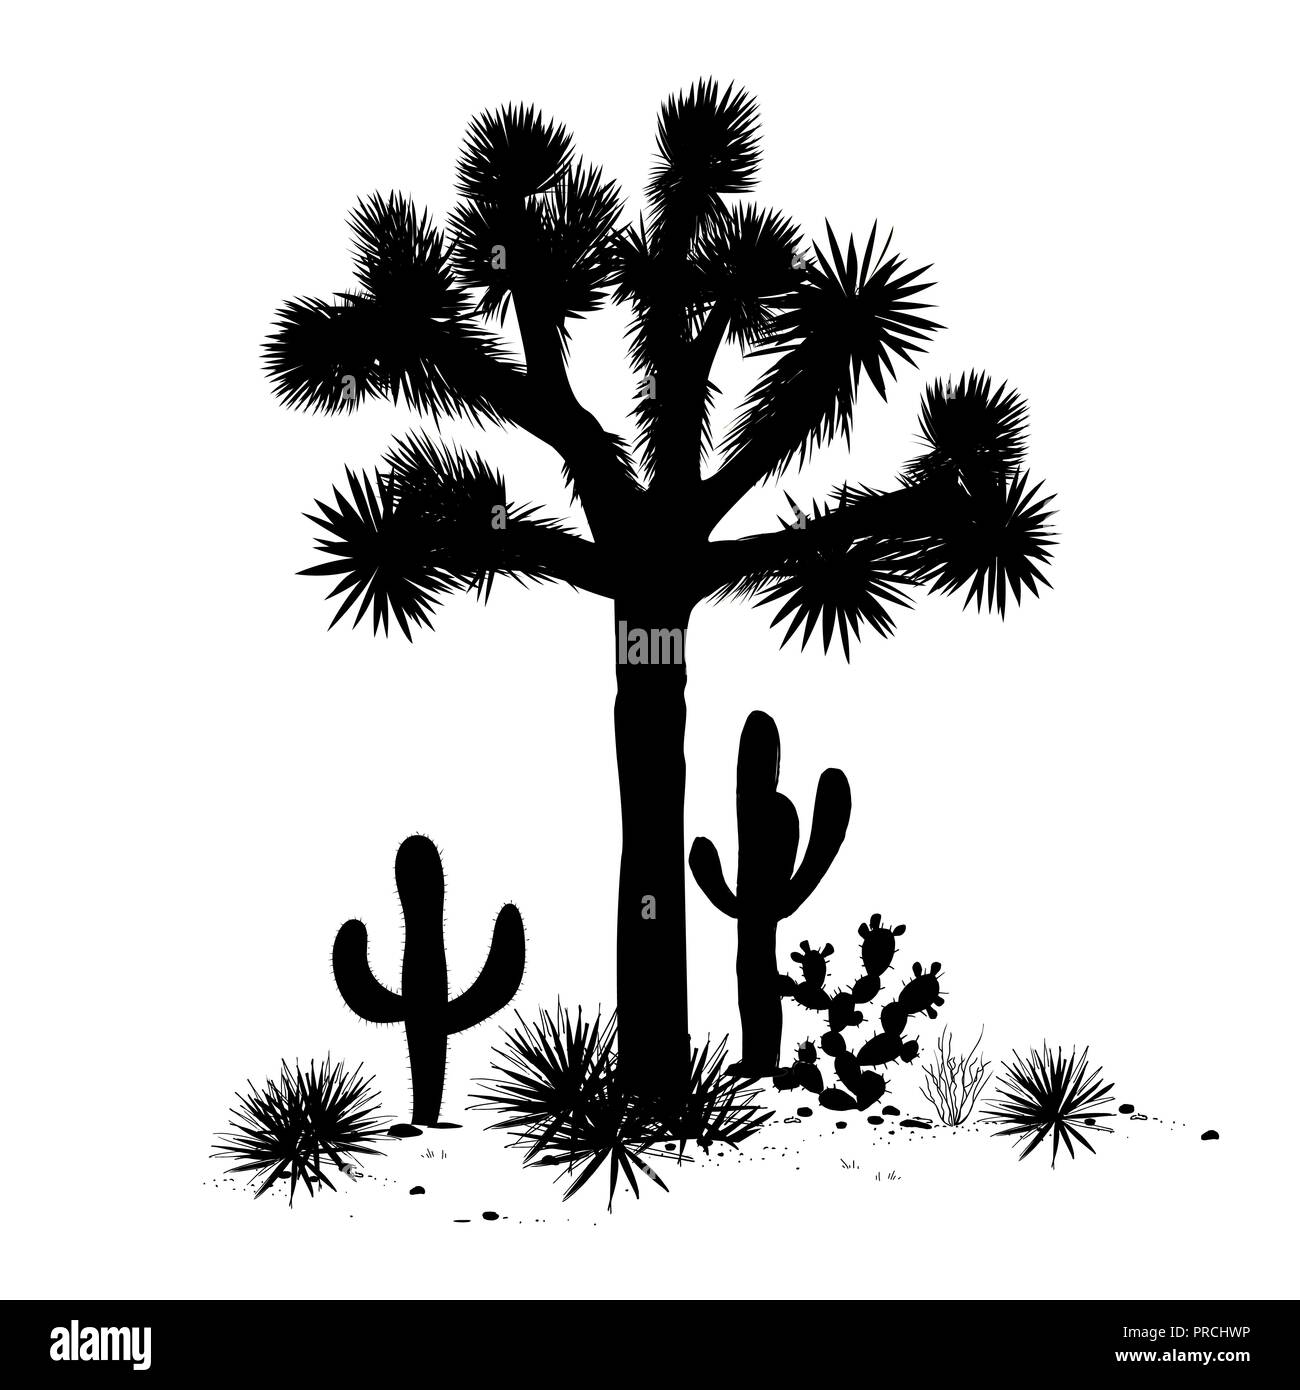 Contours paysage avec Joshua tree, agaves, figuiers de barbarie et de silhouettes. Vector illustration. Illustration de Vecteur